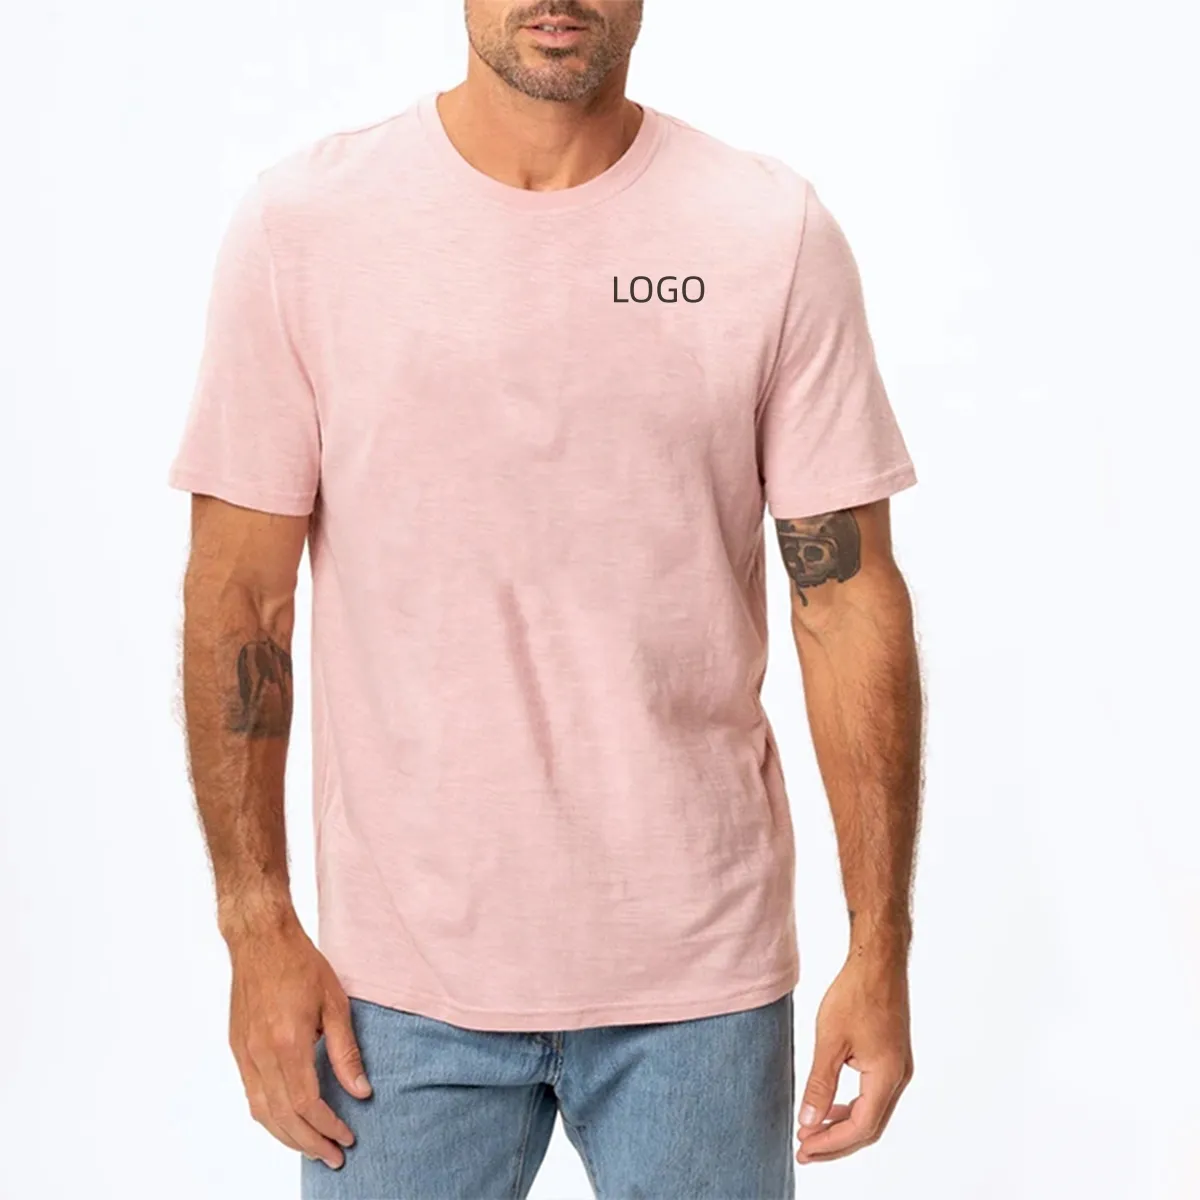 Vente chaude Fabrication imprimer personnalisé blanc dames rose t-shirt étiquette 100% coton grande taille t-shirts pour hommes t-shirt graphique